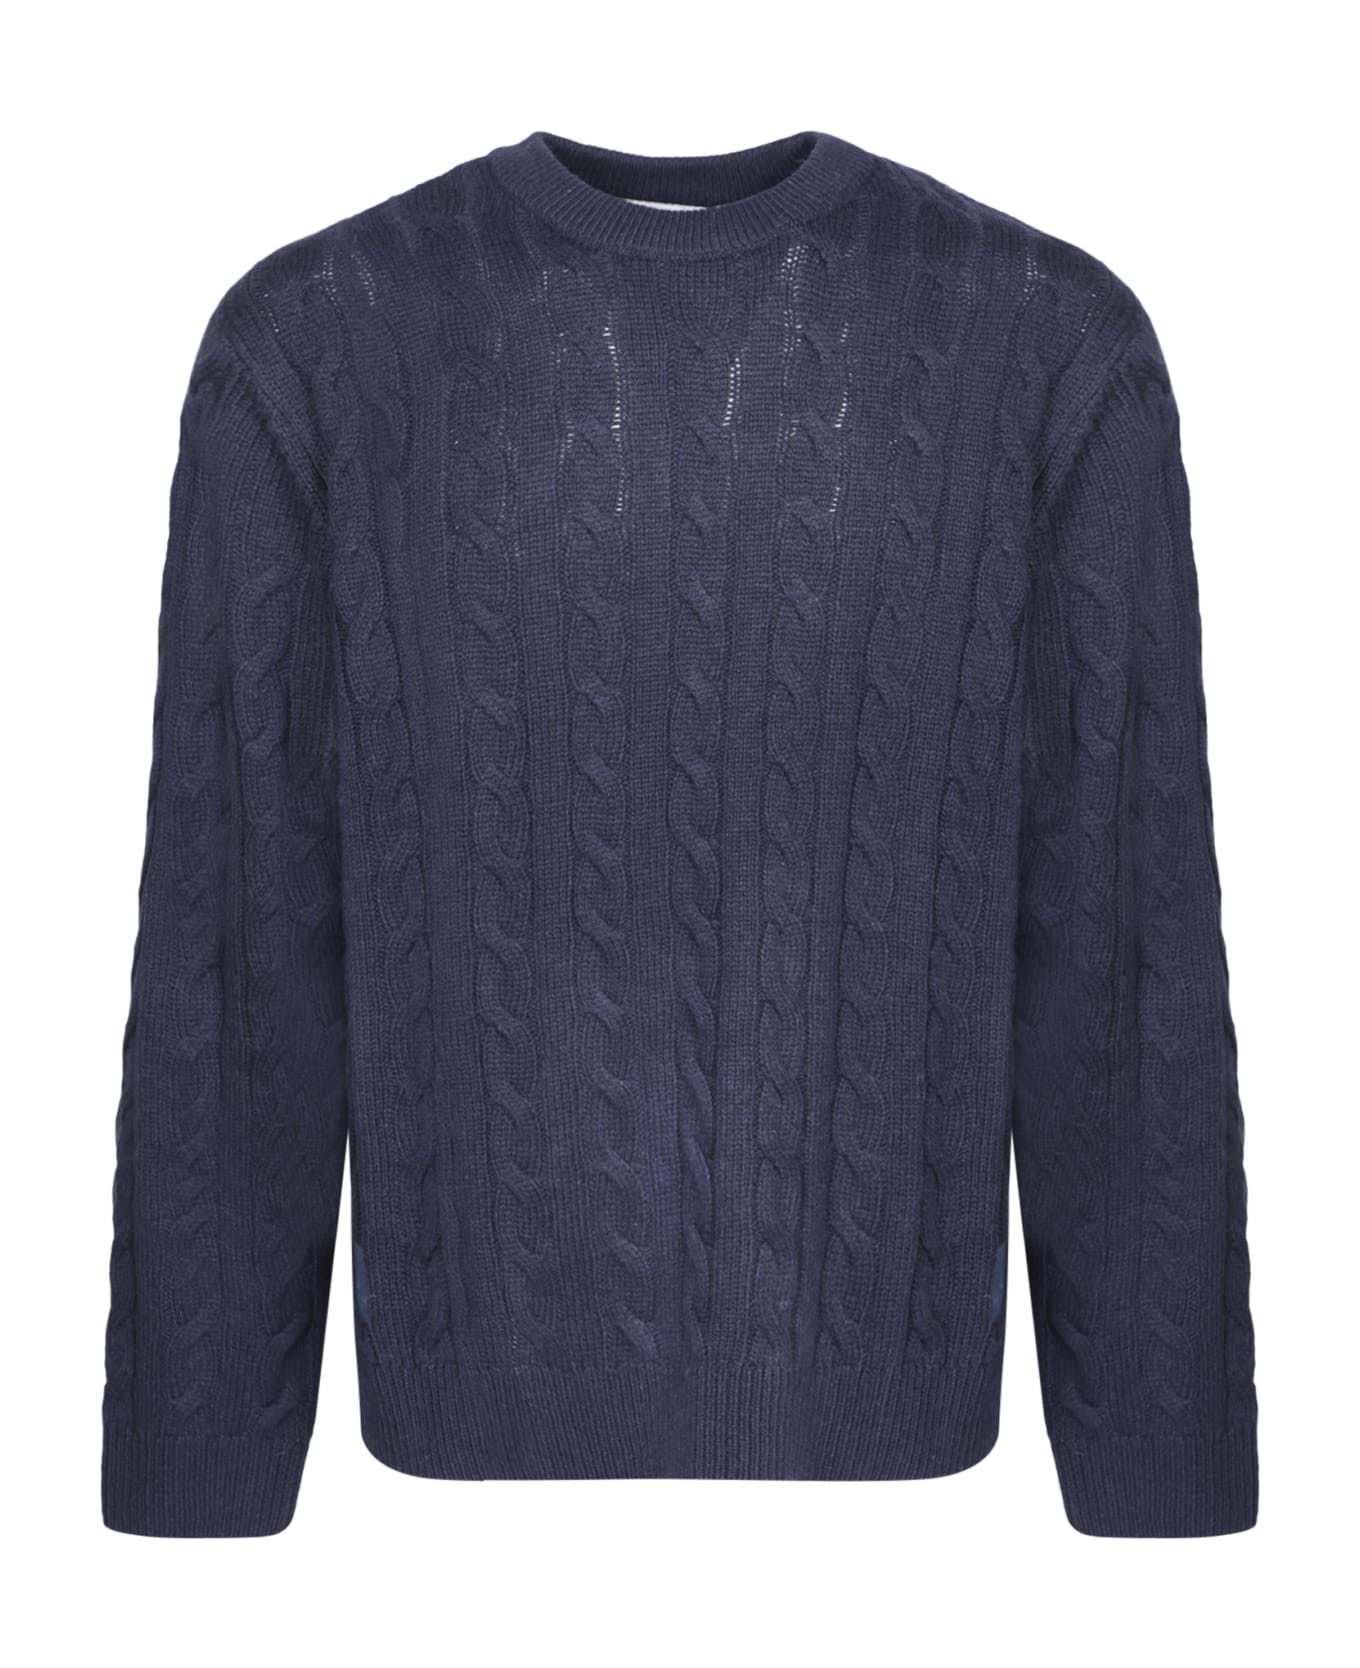 Carhartt Cambell Blue Sweater - Blue